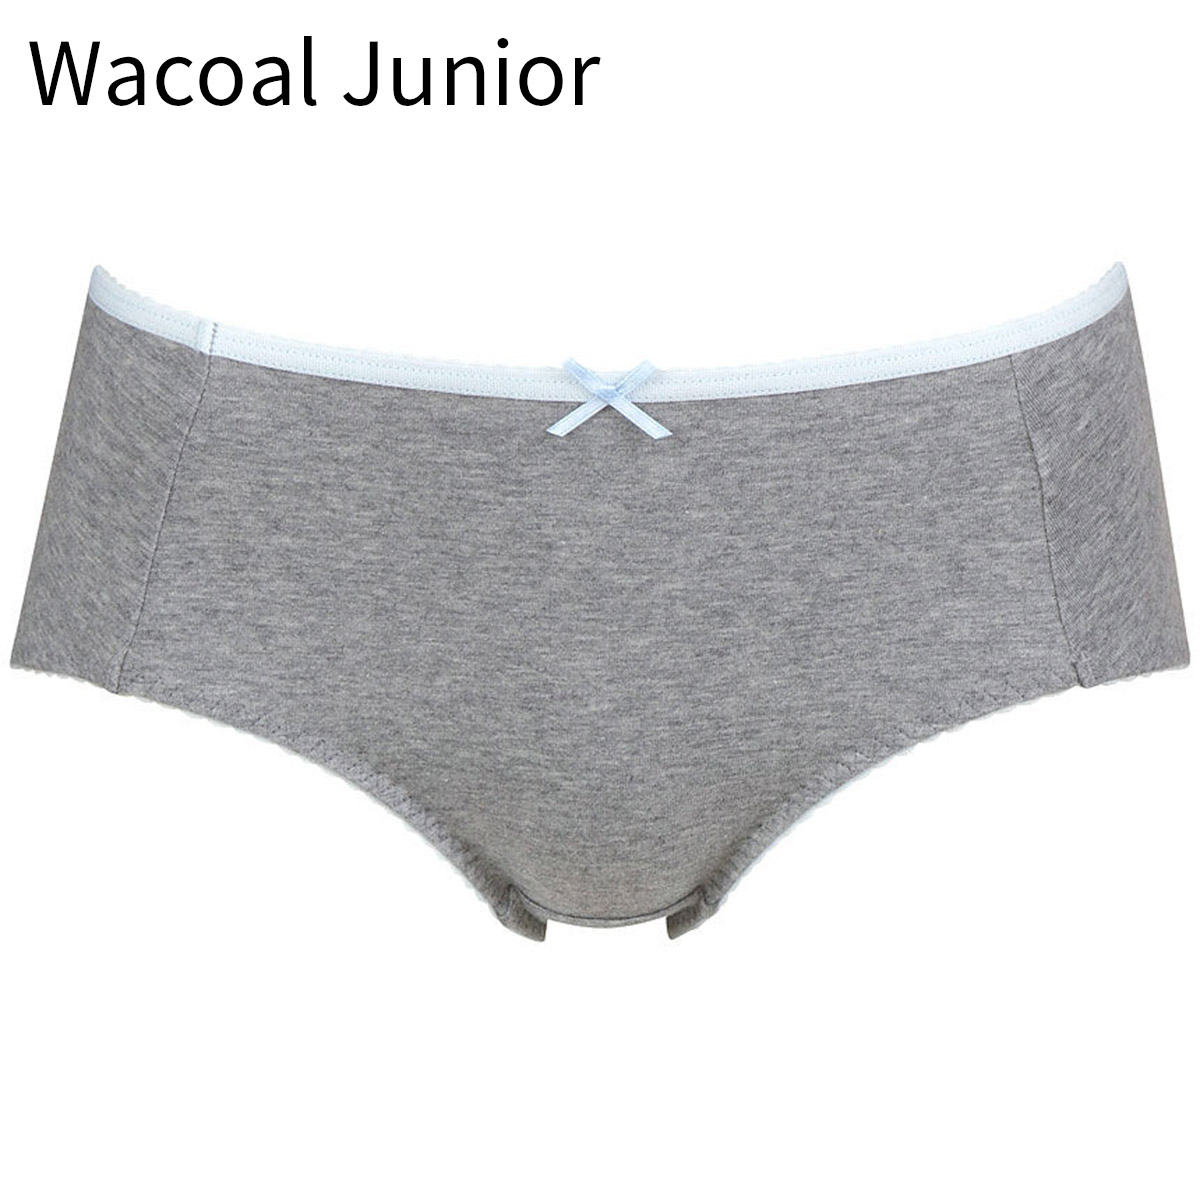 Wacoal 华歌尔 高中初中小学生发育期少女不易夹臀三角内裤 WJ6060 27.8元